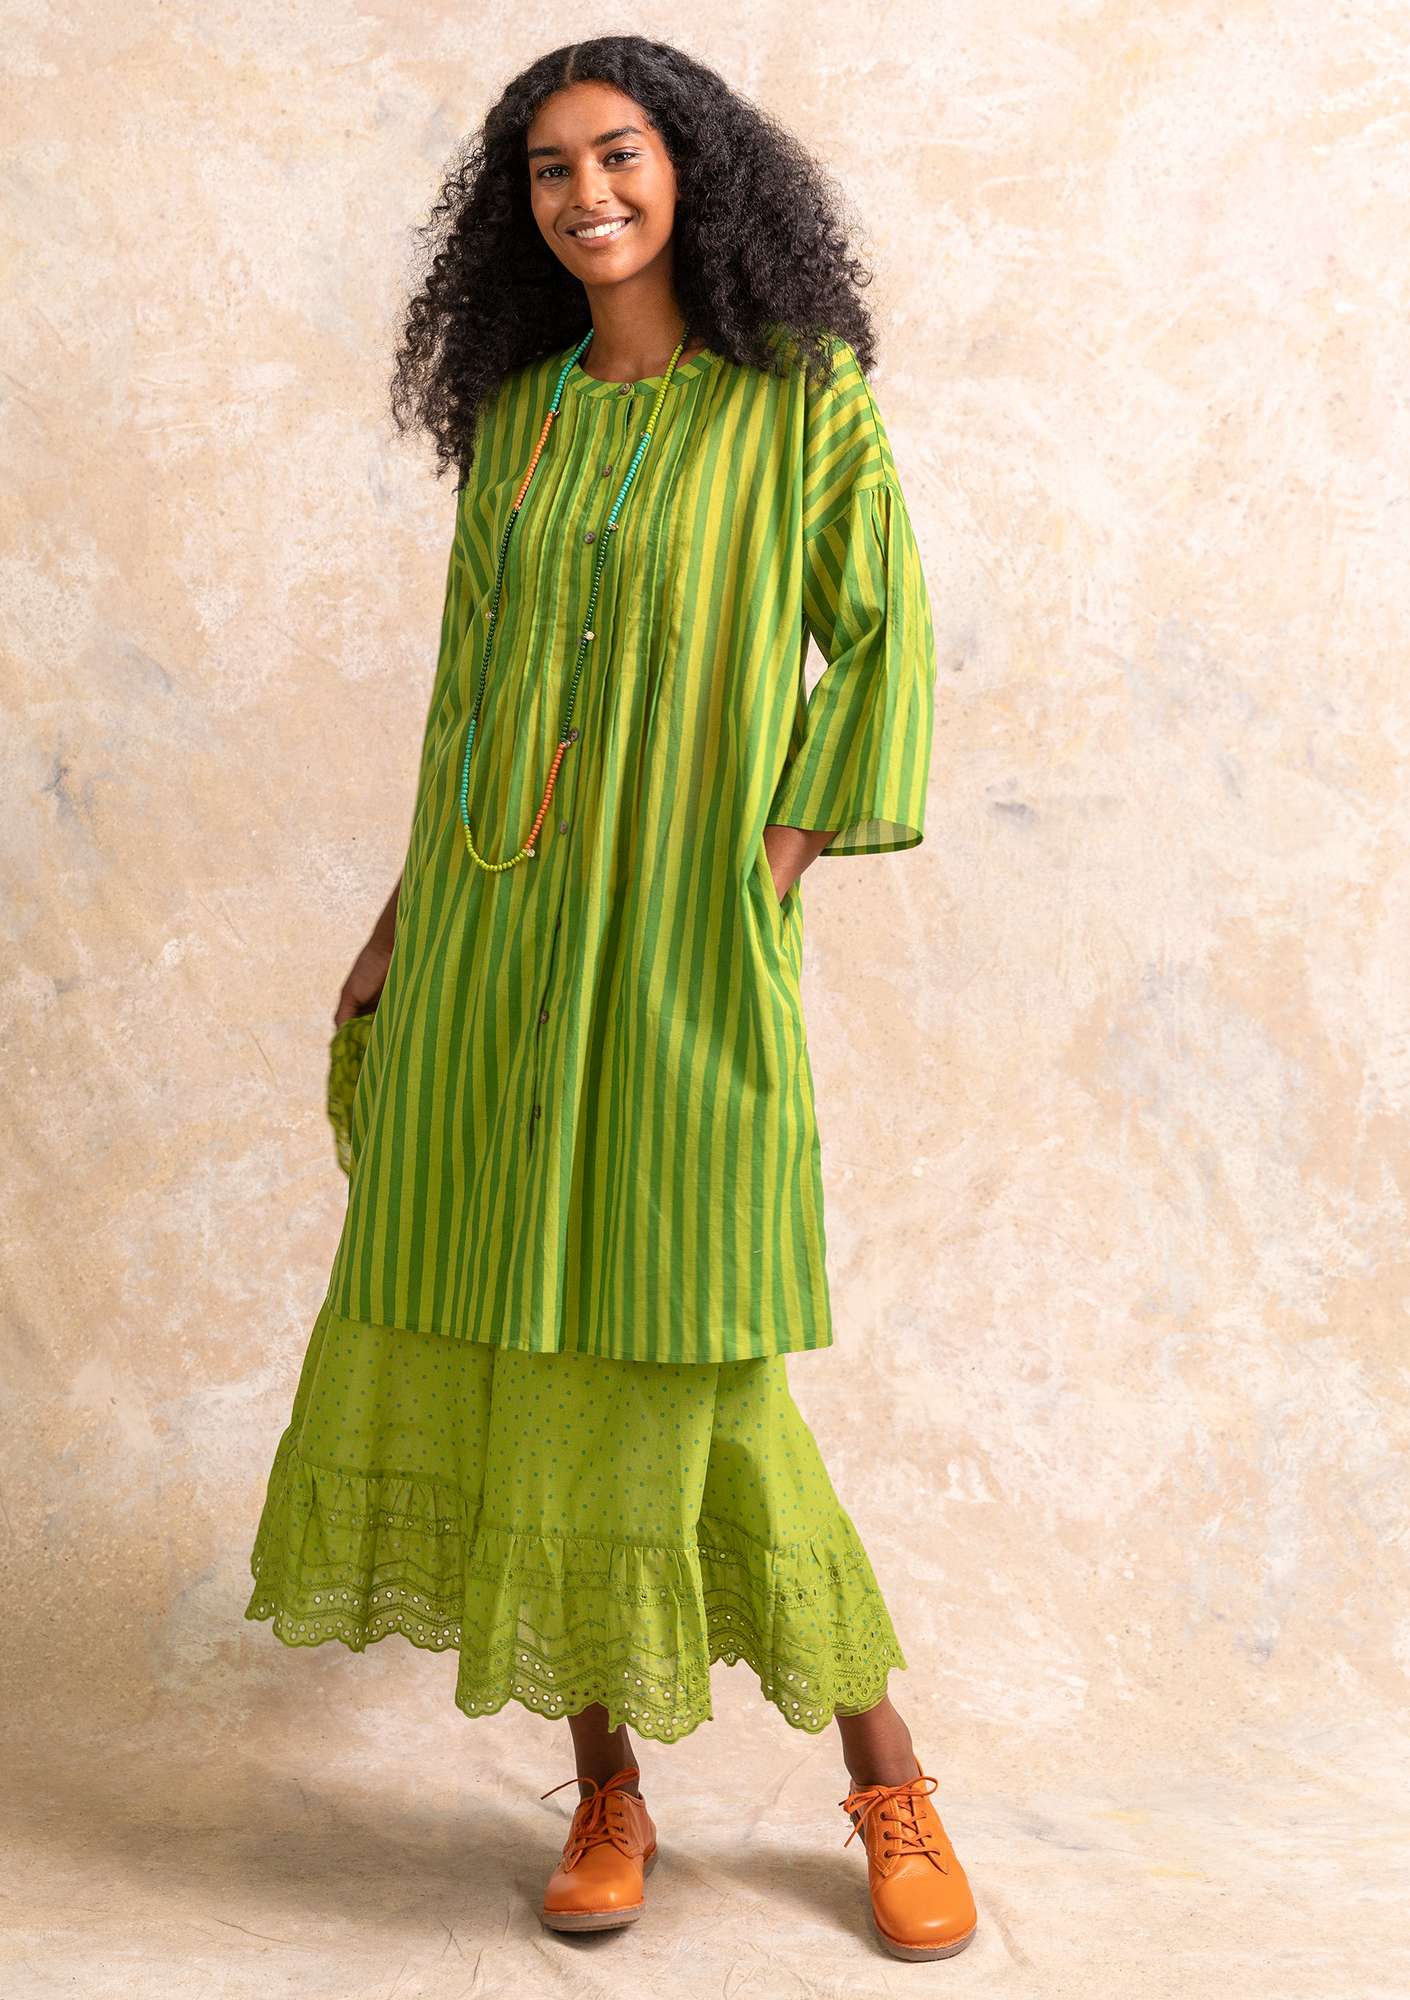 Vevd kjole «Serafina» i økologisk bomull kivi/mønstret thumbnail